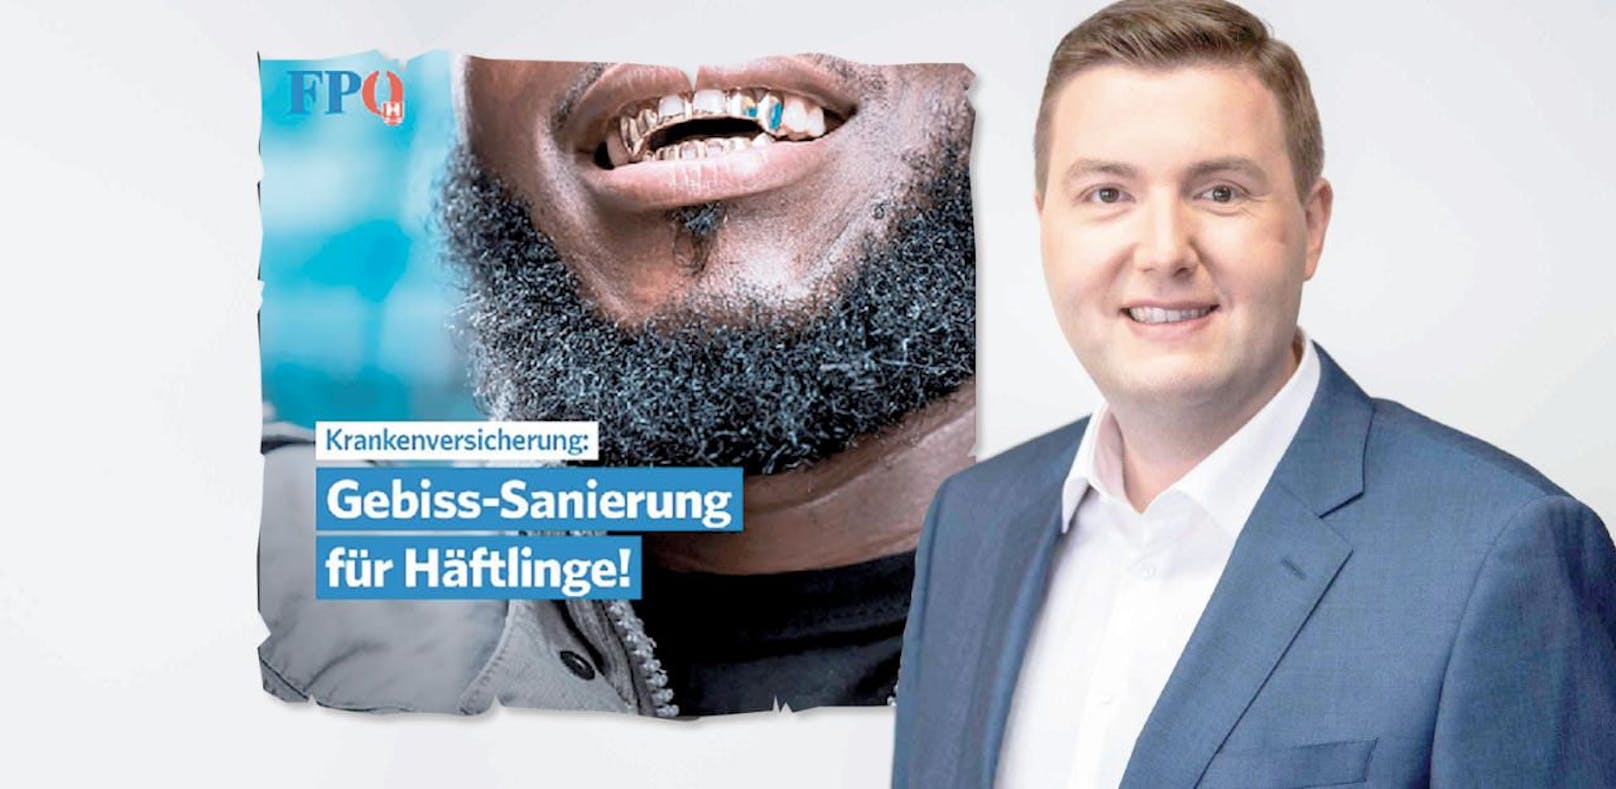 Der Linzer Stadtrat Michael Raml (FPÖ) schockt mit einem rassistischen Facebook-Posting. 